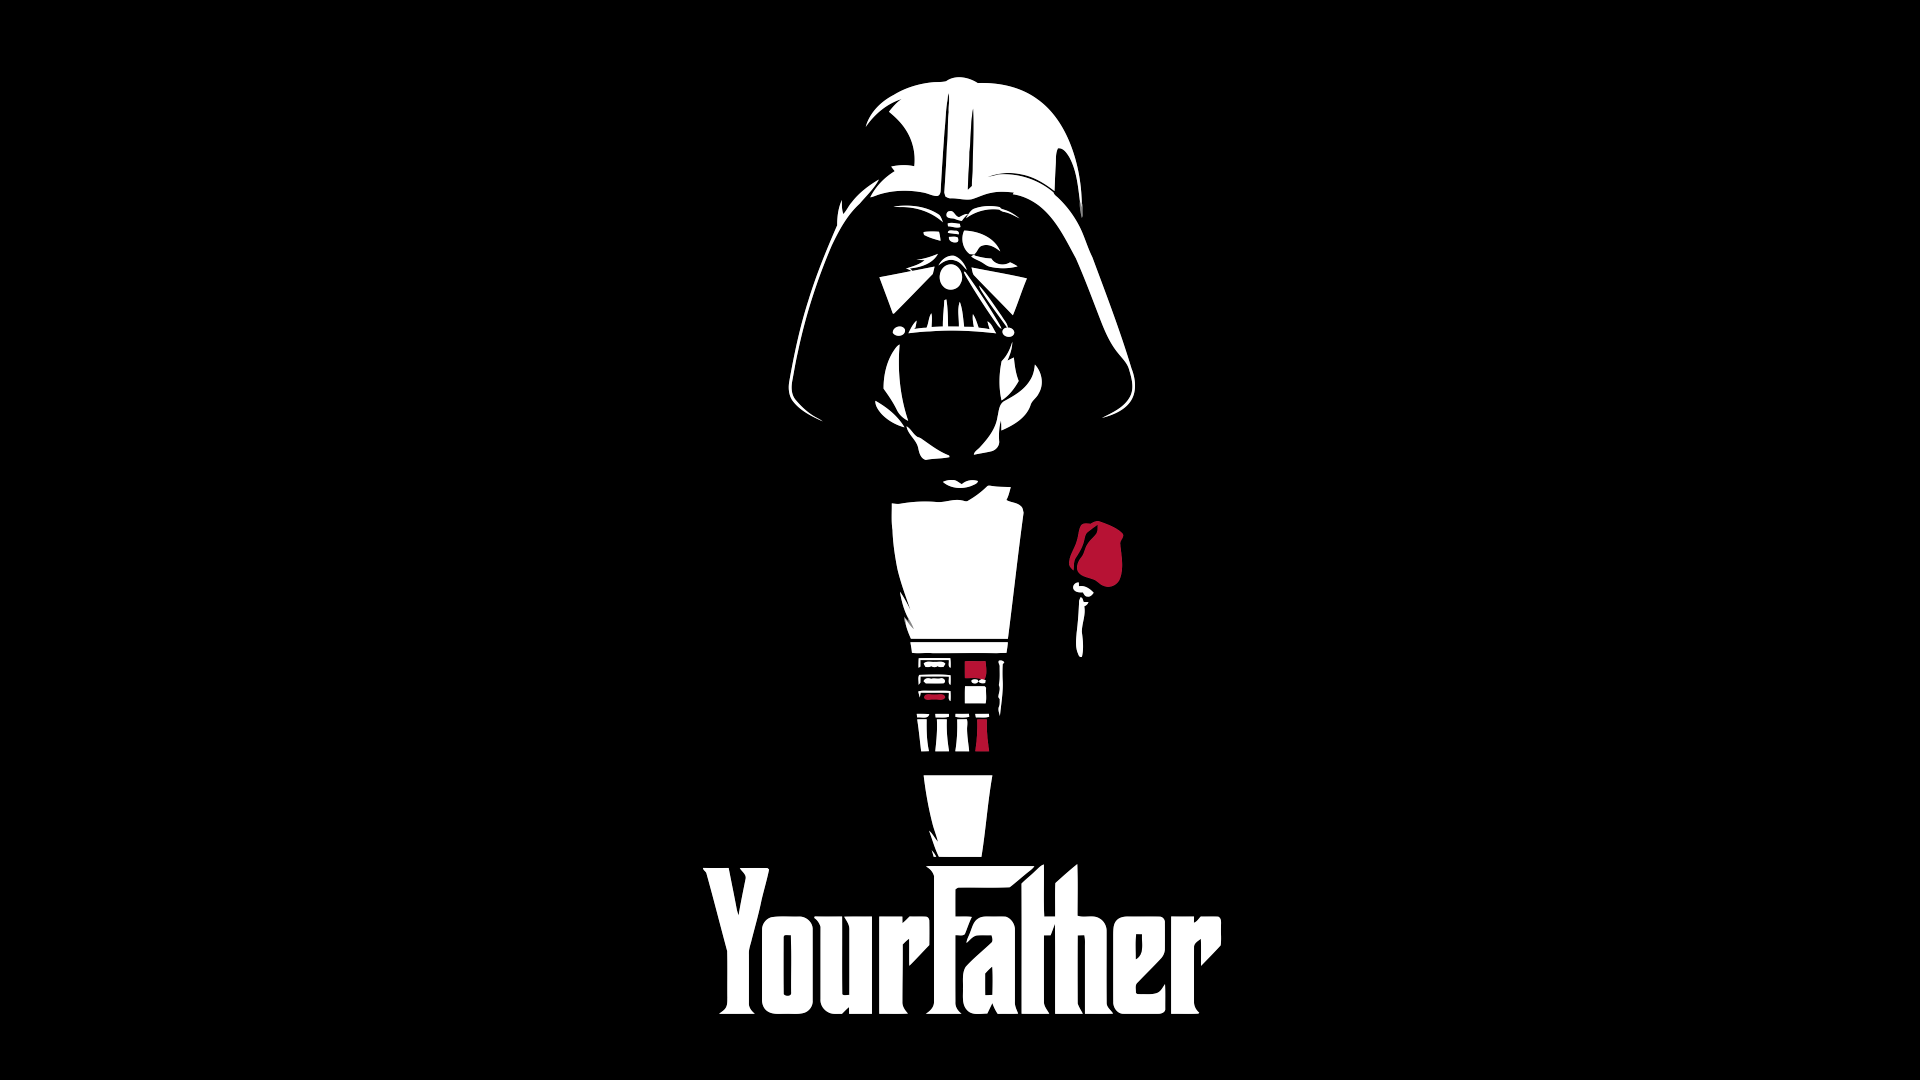 Funny Darth Vader Wallpaper